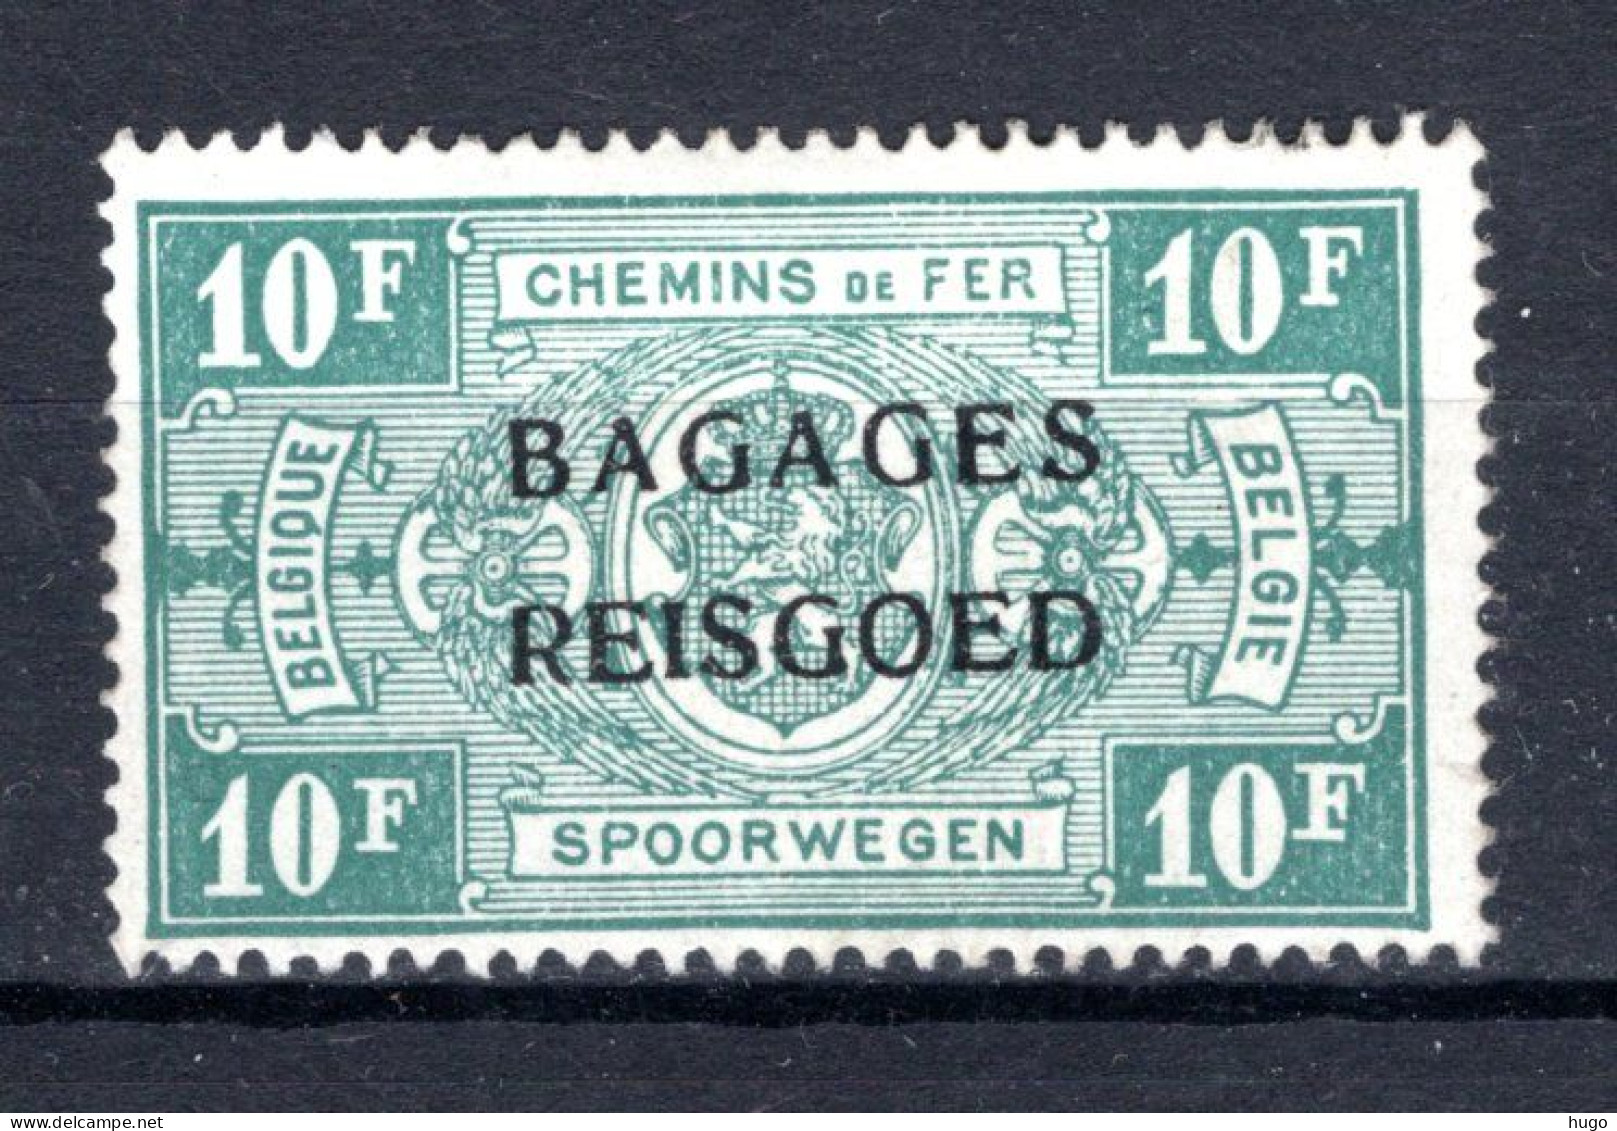 BA19 MH* 1935 - Spoorwegzegels Met Opdruk "BAGAGES - REISGOED" - Sot  - Luggage [BA]